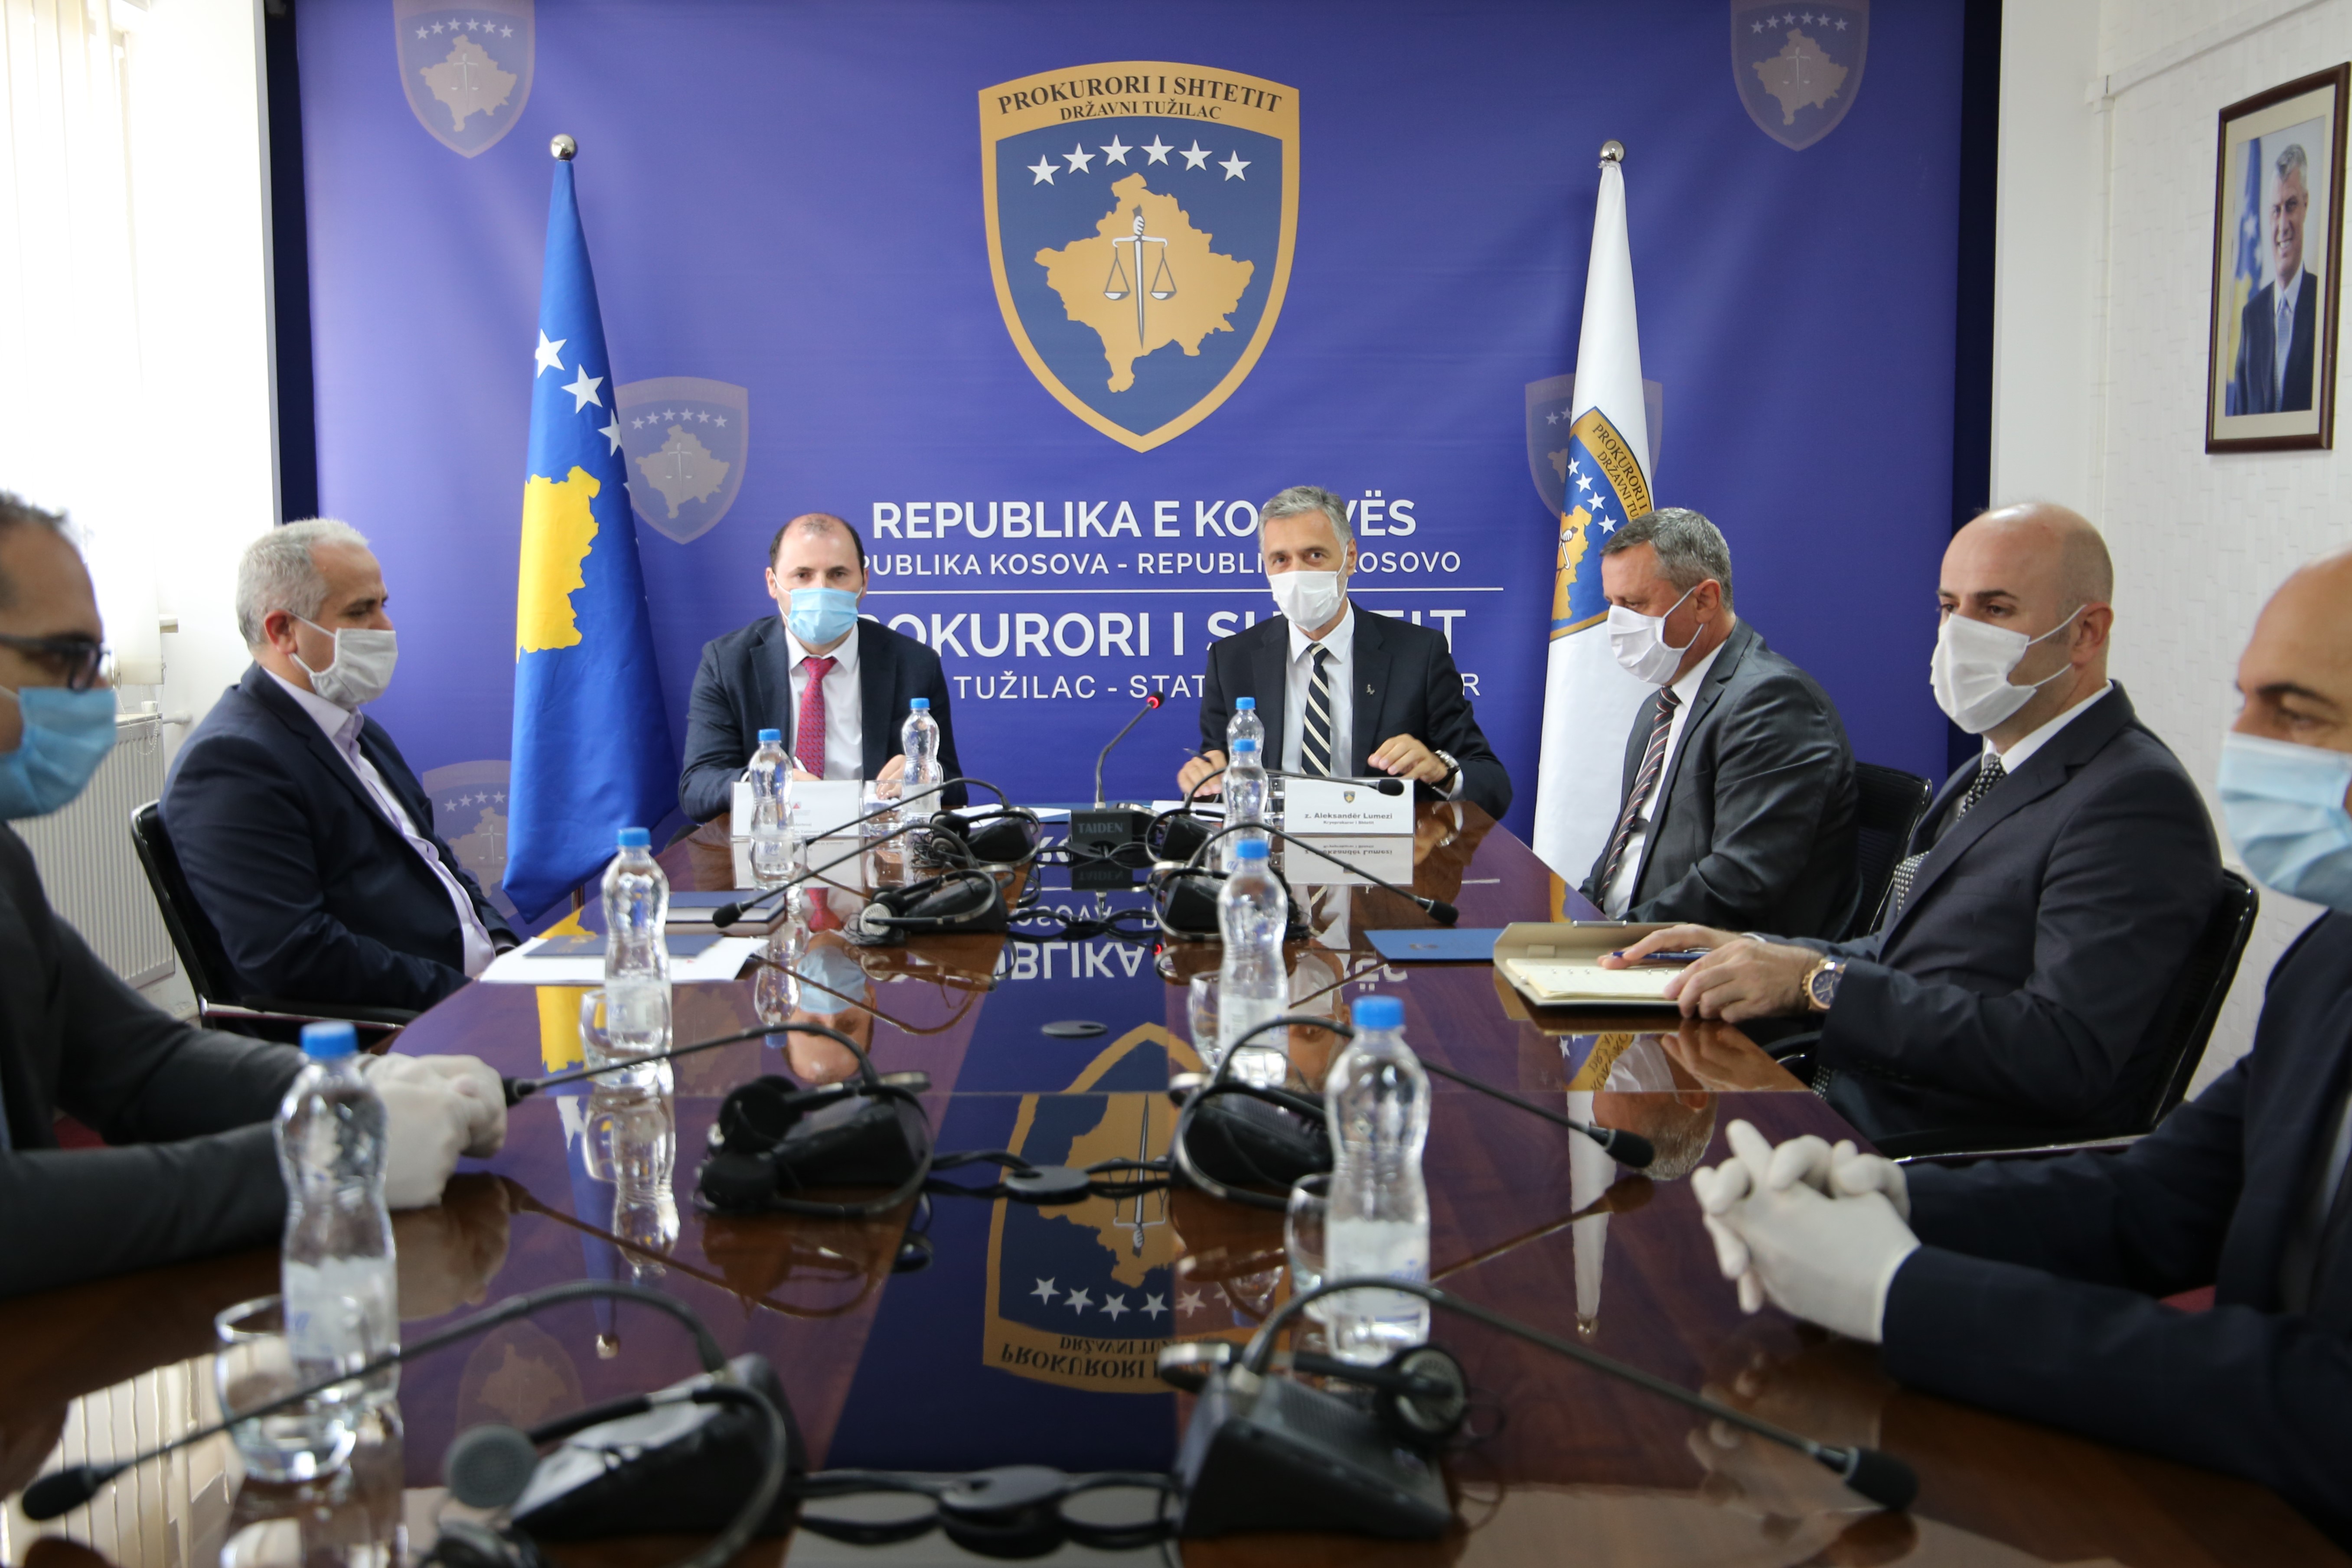 Prokurori i Shtetit dhe Administrata Tatimore e Kosovës nënshkruajnë memorandum bashkëpunimi